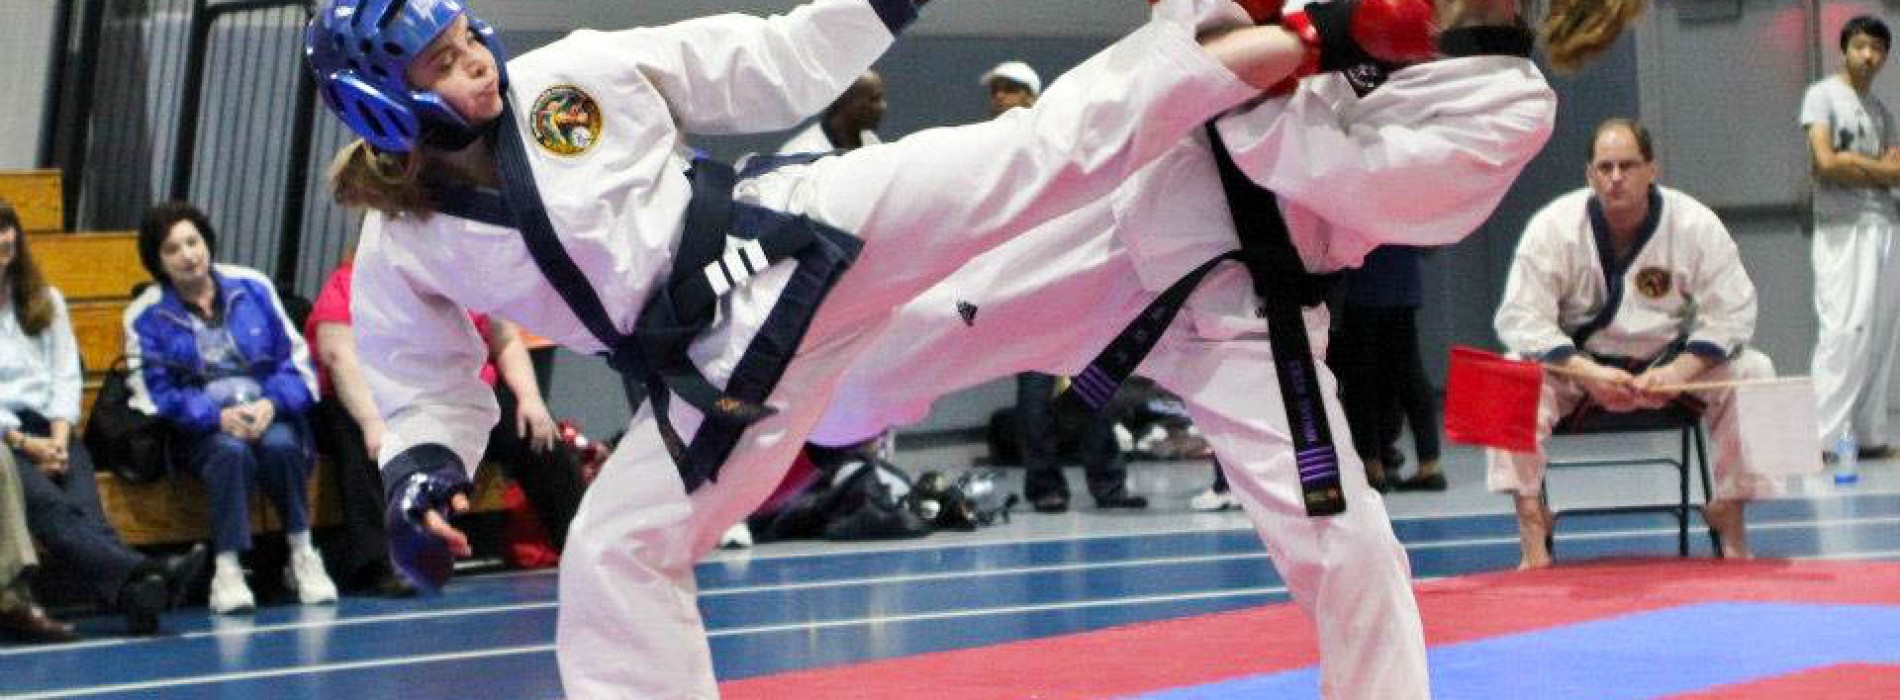 Best Of karate tournaments florida Karate florida usa